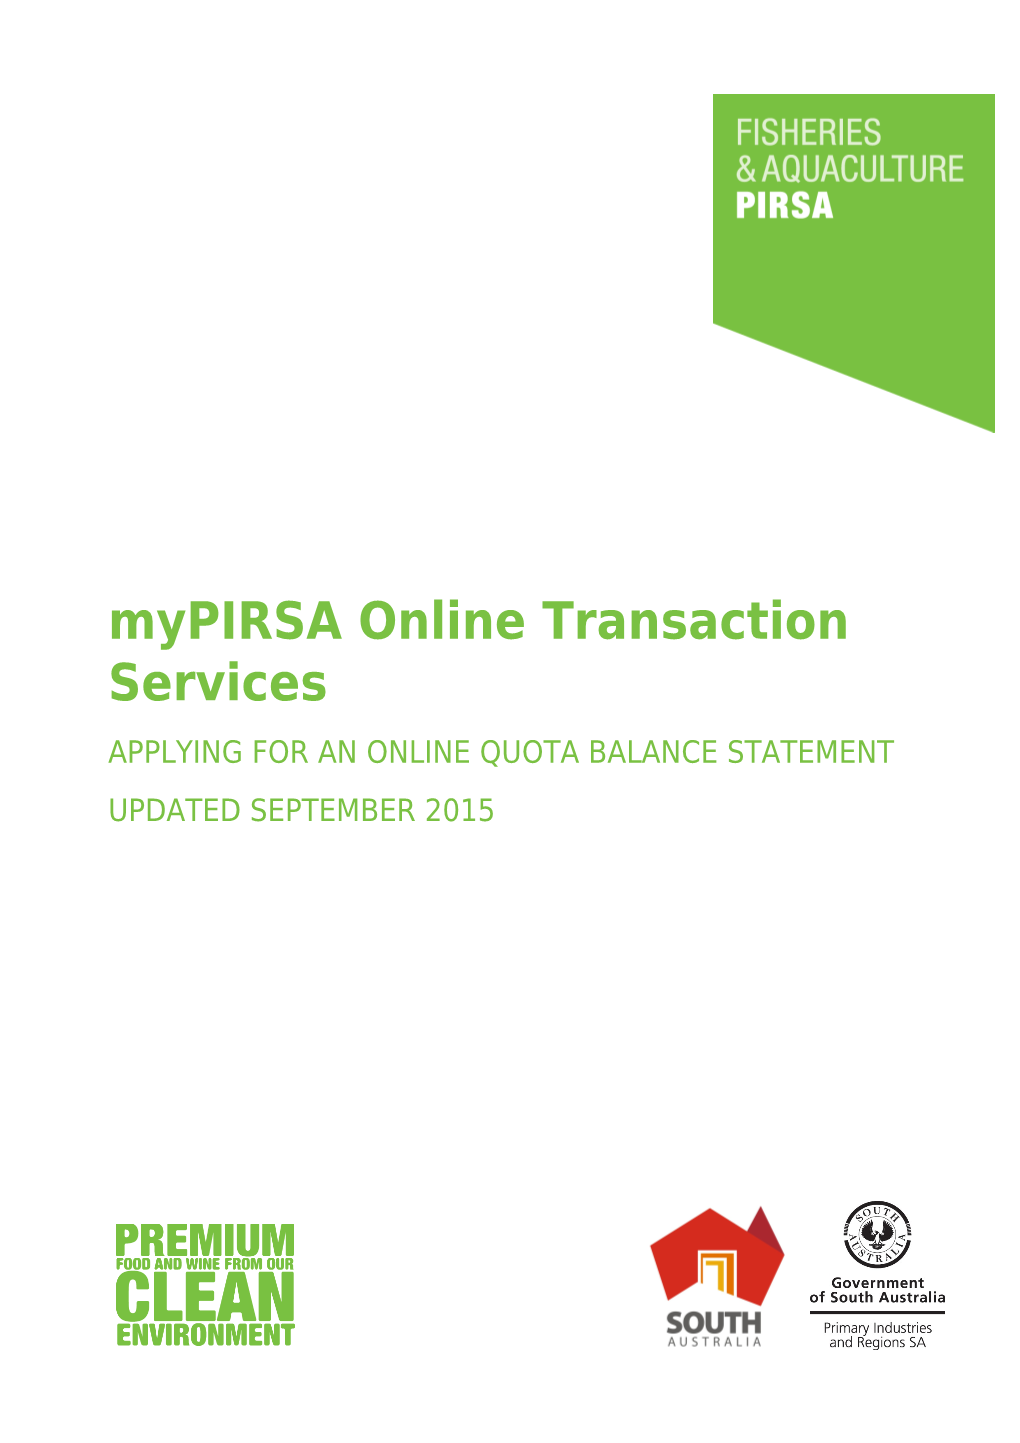 Mypirsa Online Transaction Services